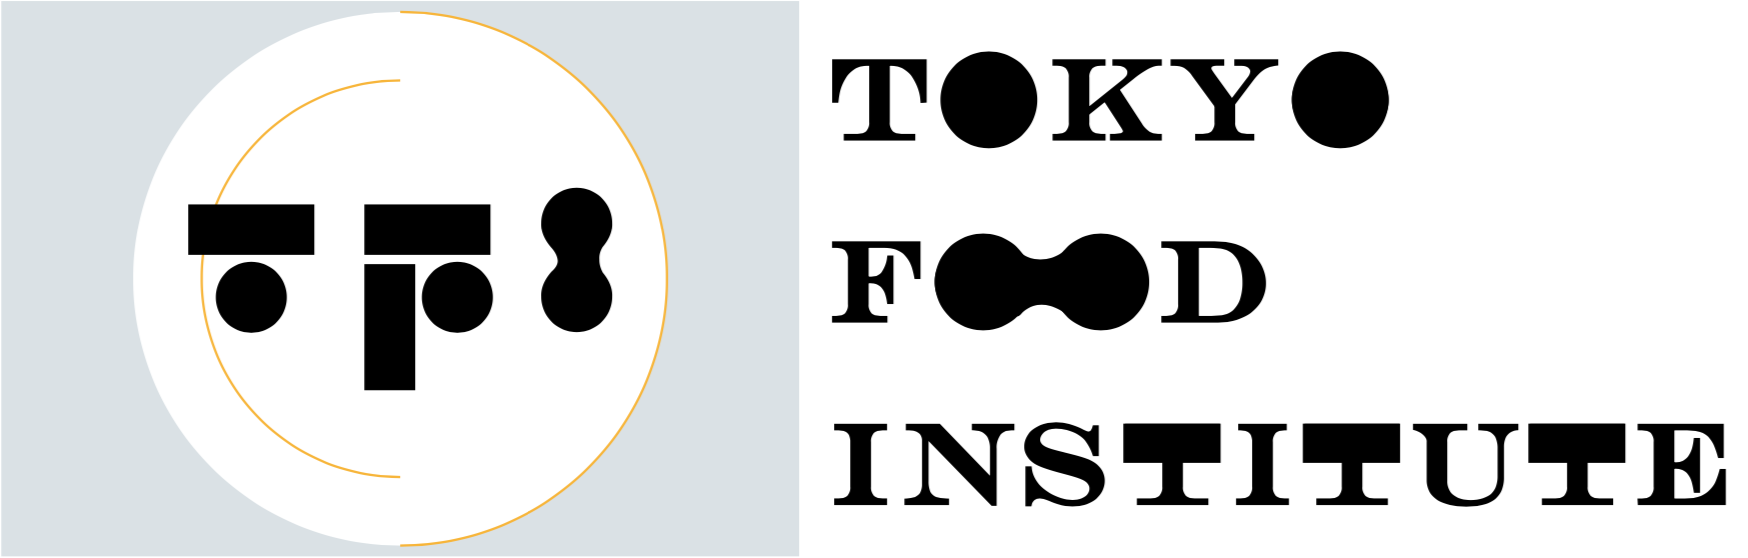 食に関する新規事業支援や人材育成を推進し、東京から食の未来を創る「一般社団法人TOKYO FOOD INSTITUTE」 設立のお知らせのサブ画像1